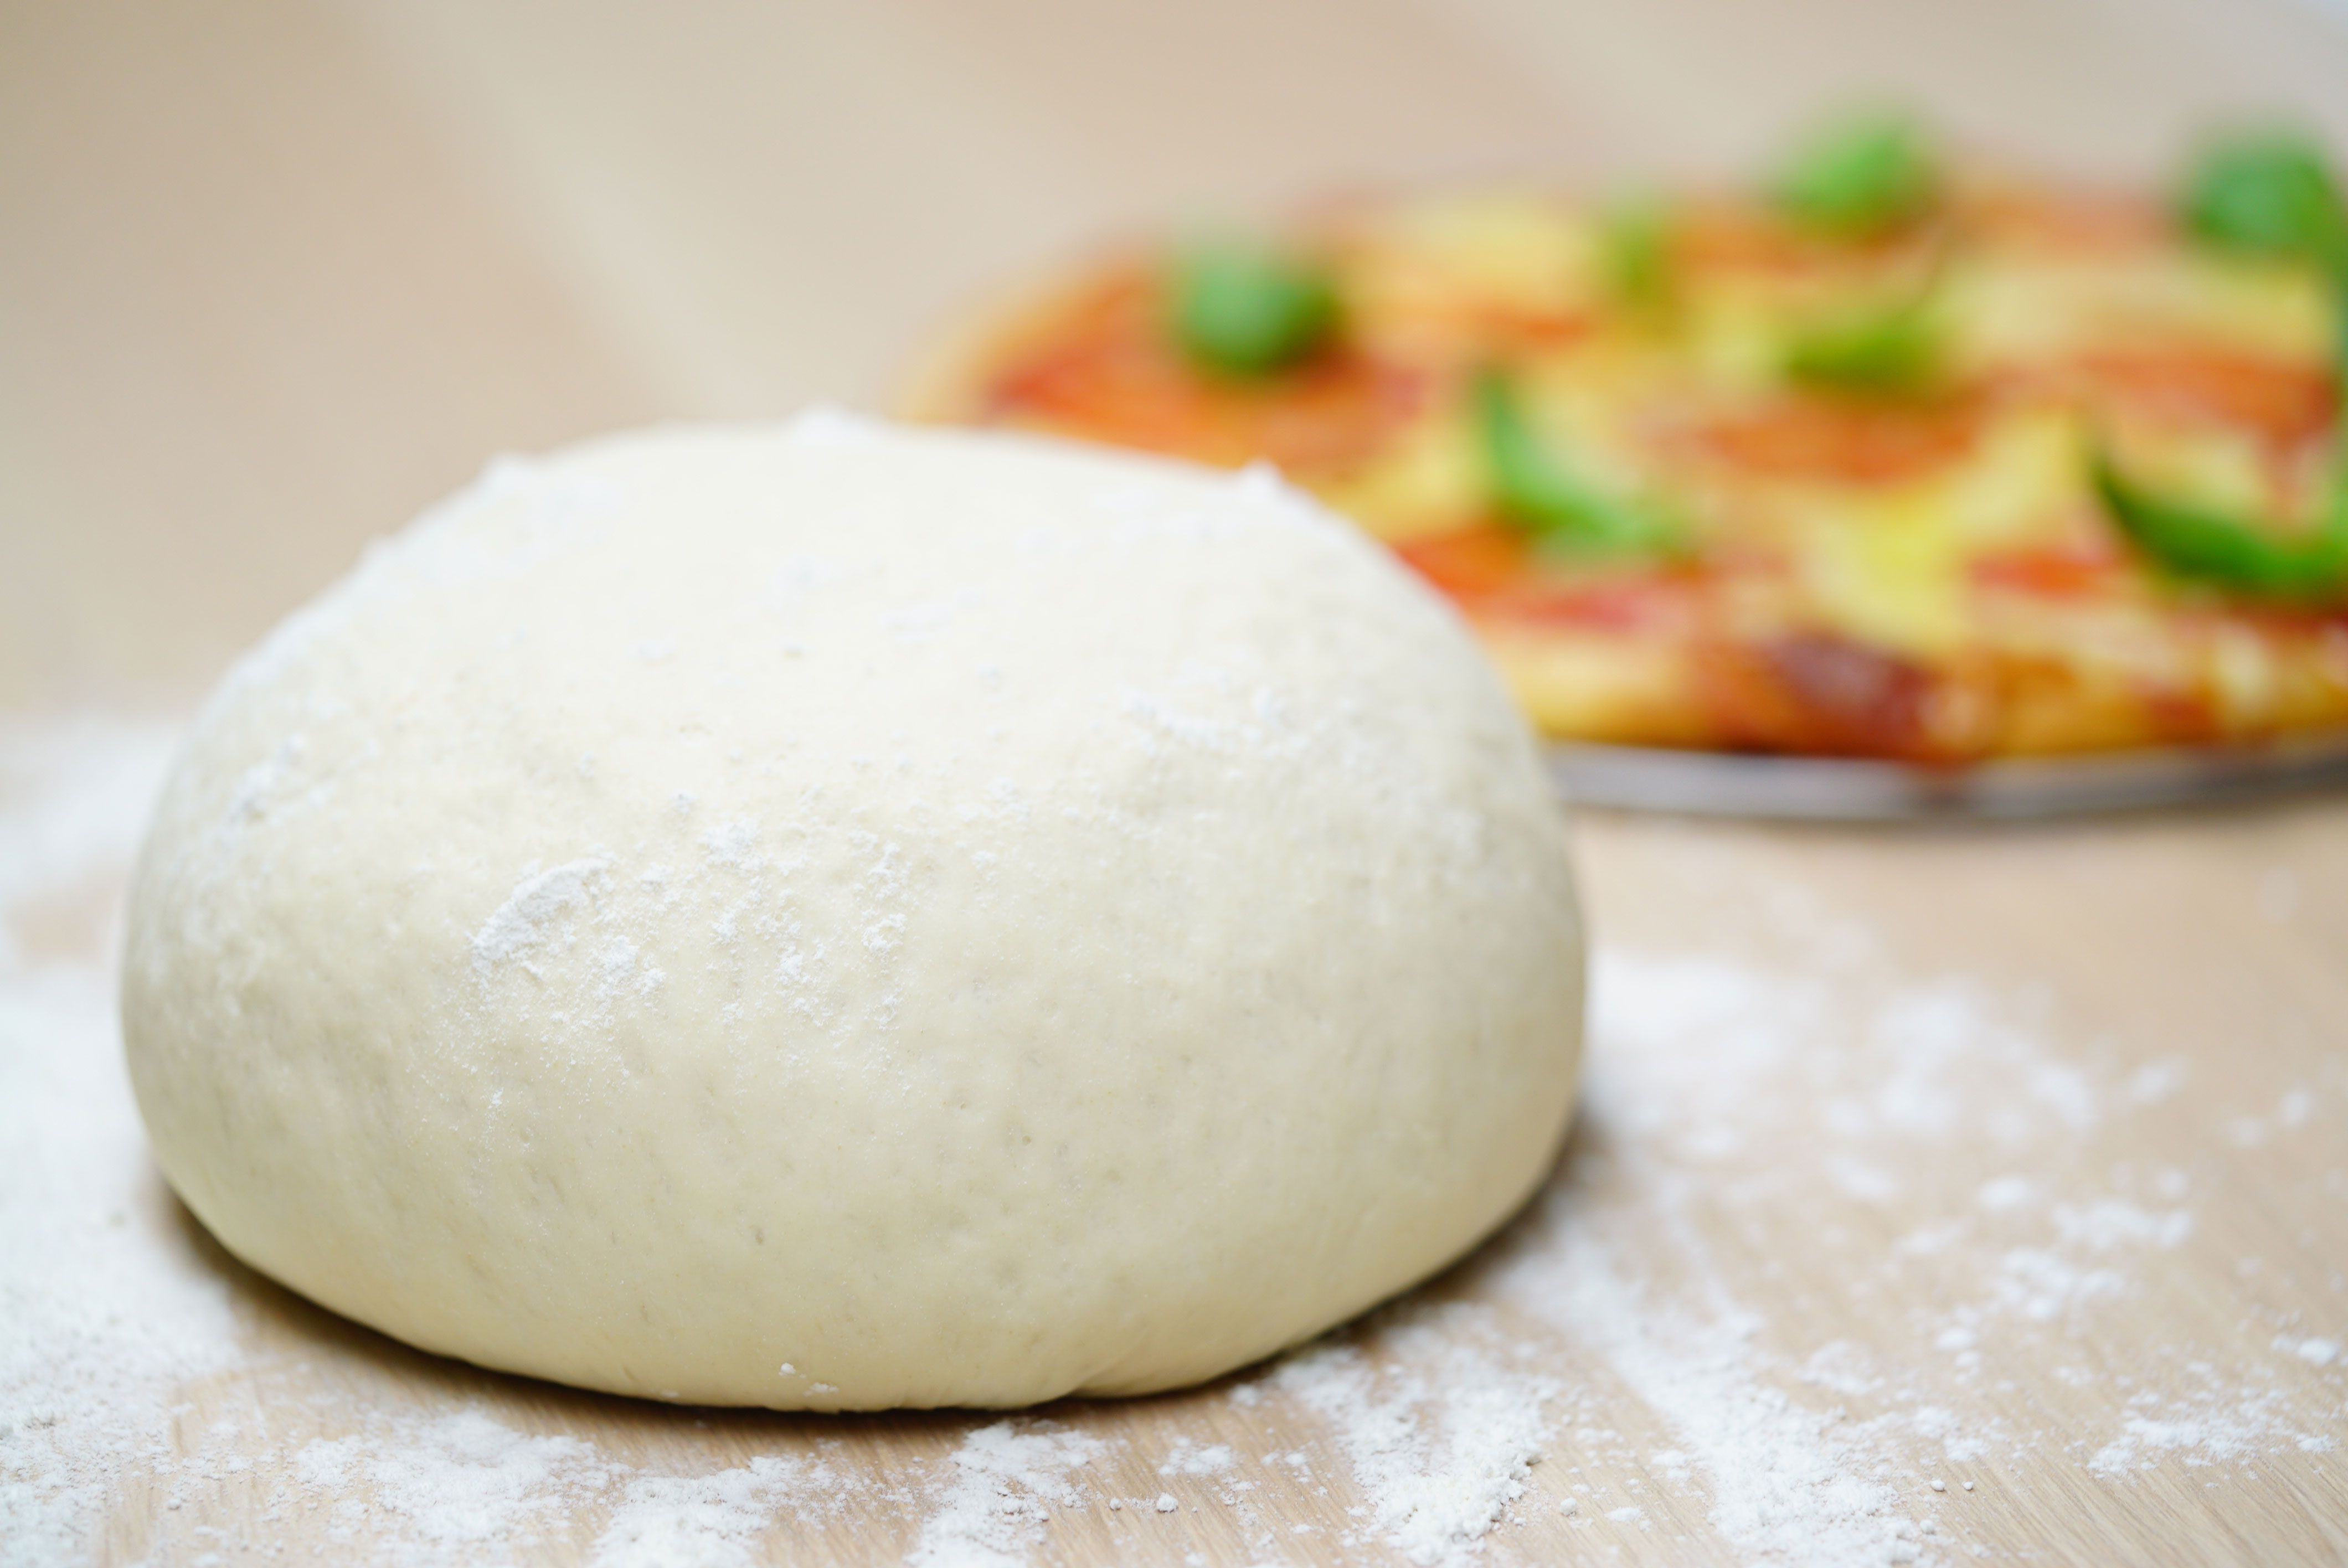 хрустящее тонкое тесто для пиццы бездрожжевое фото 19